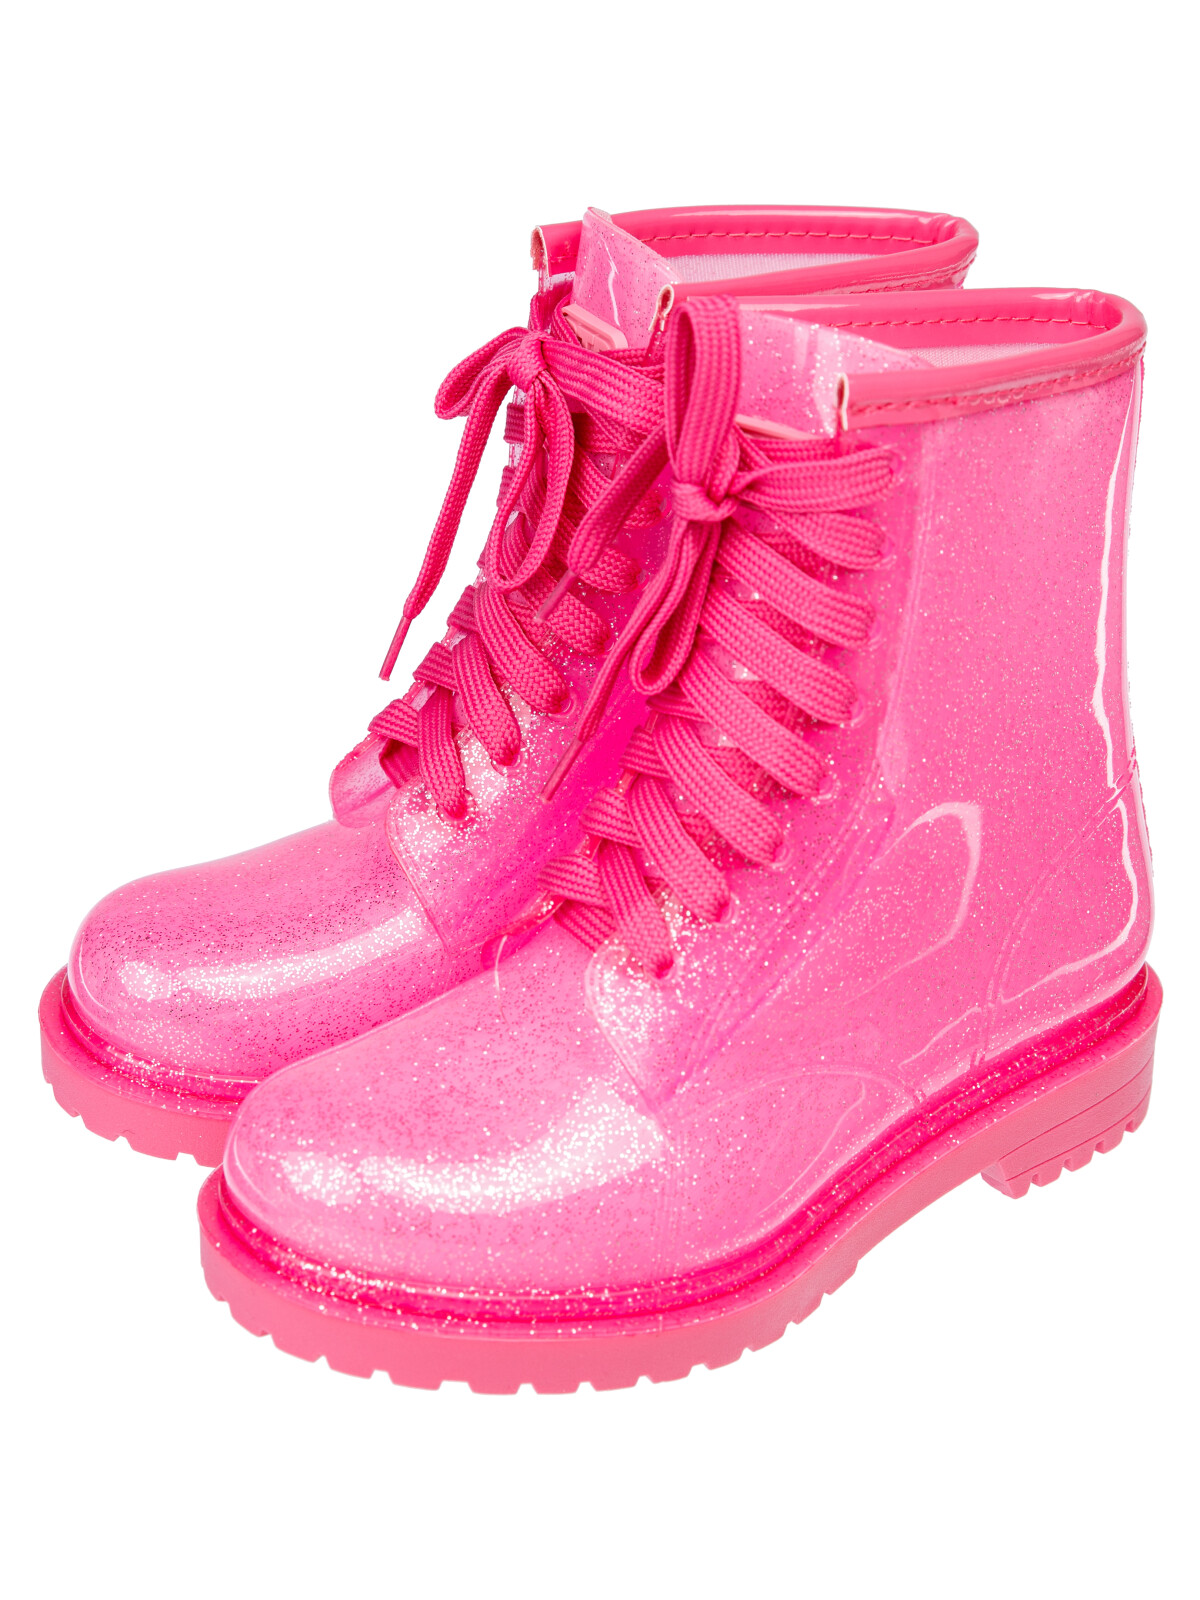 ботинки playtoday tween для девочки, розовые